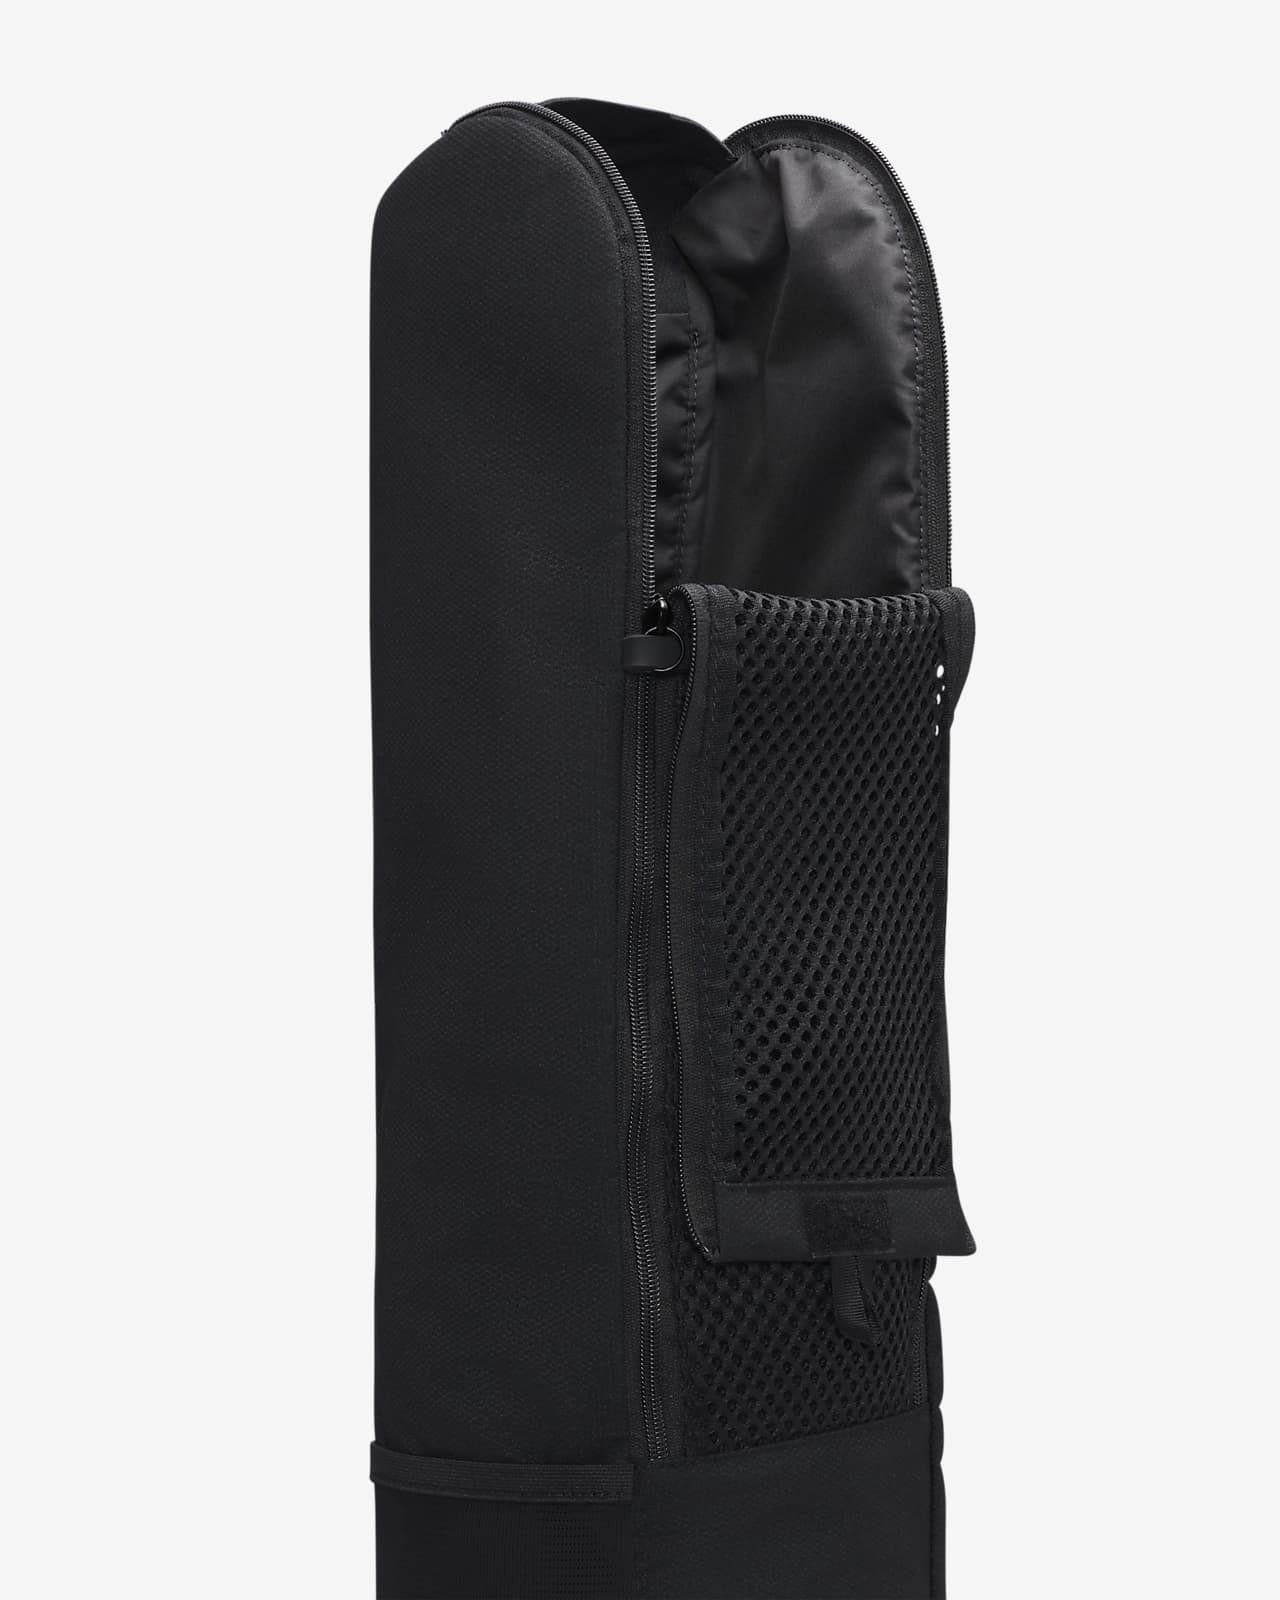 Men's Yoga Mat Bag/Carrier  Yoga bag, Yoga for men, Mens leather bag